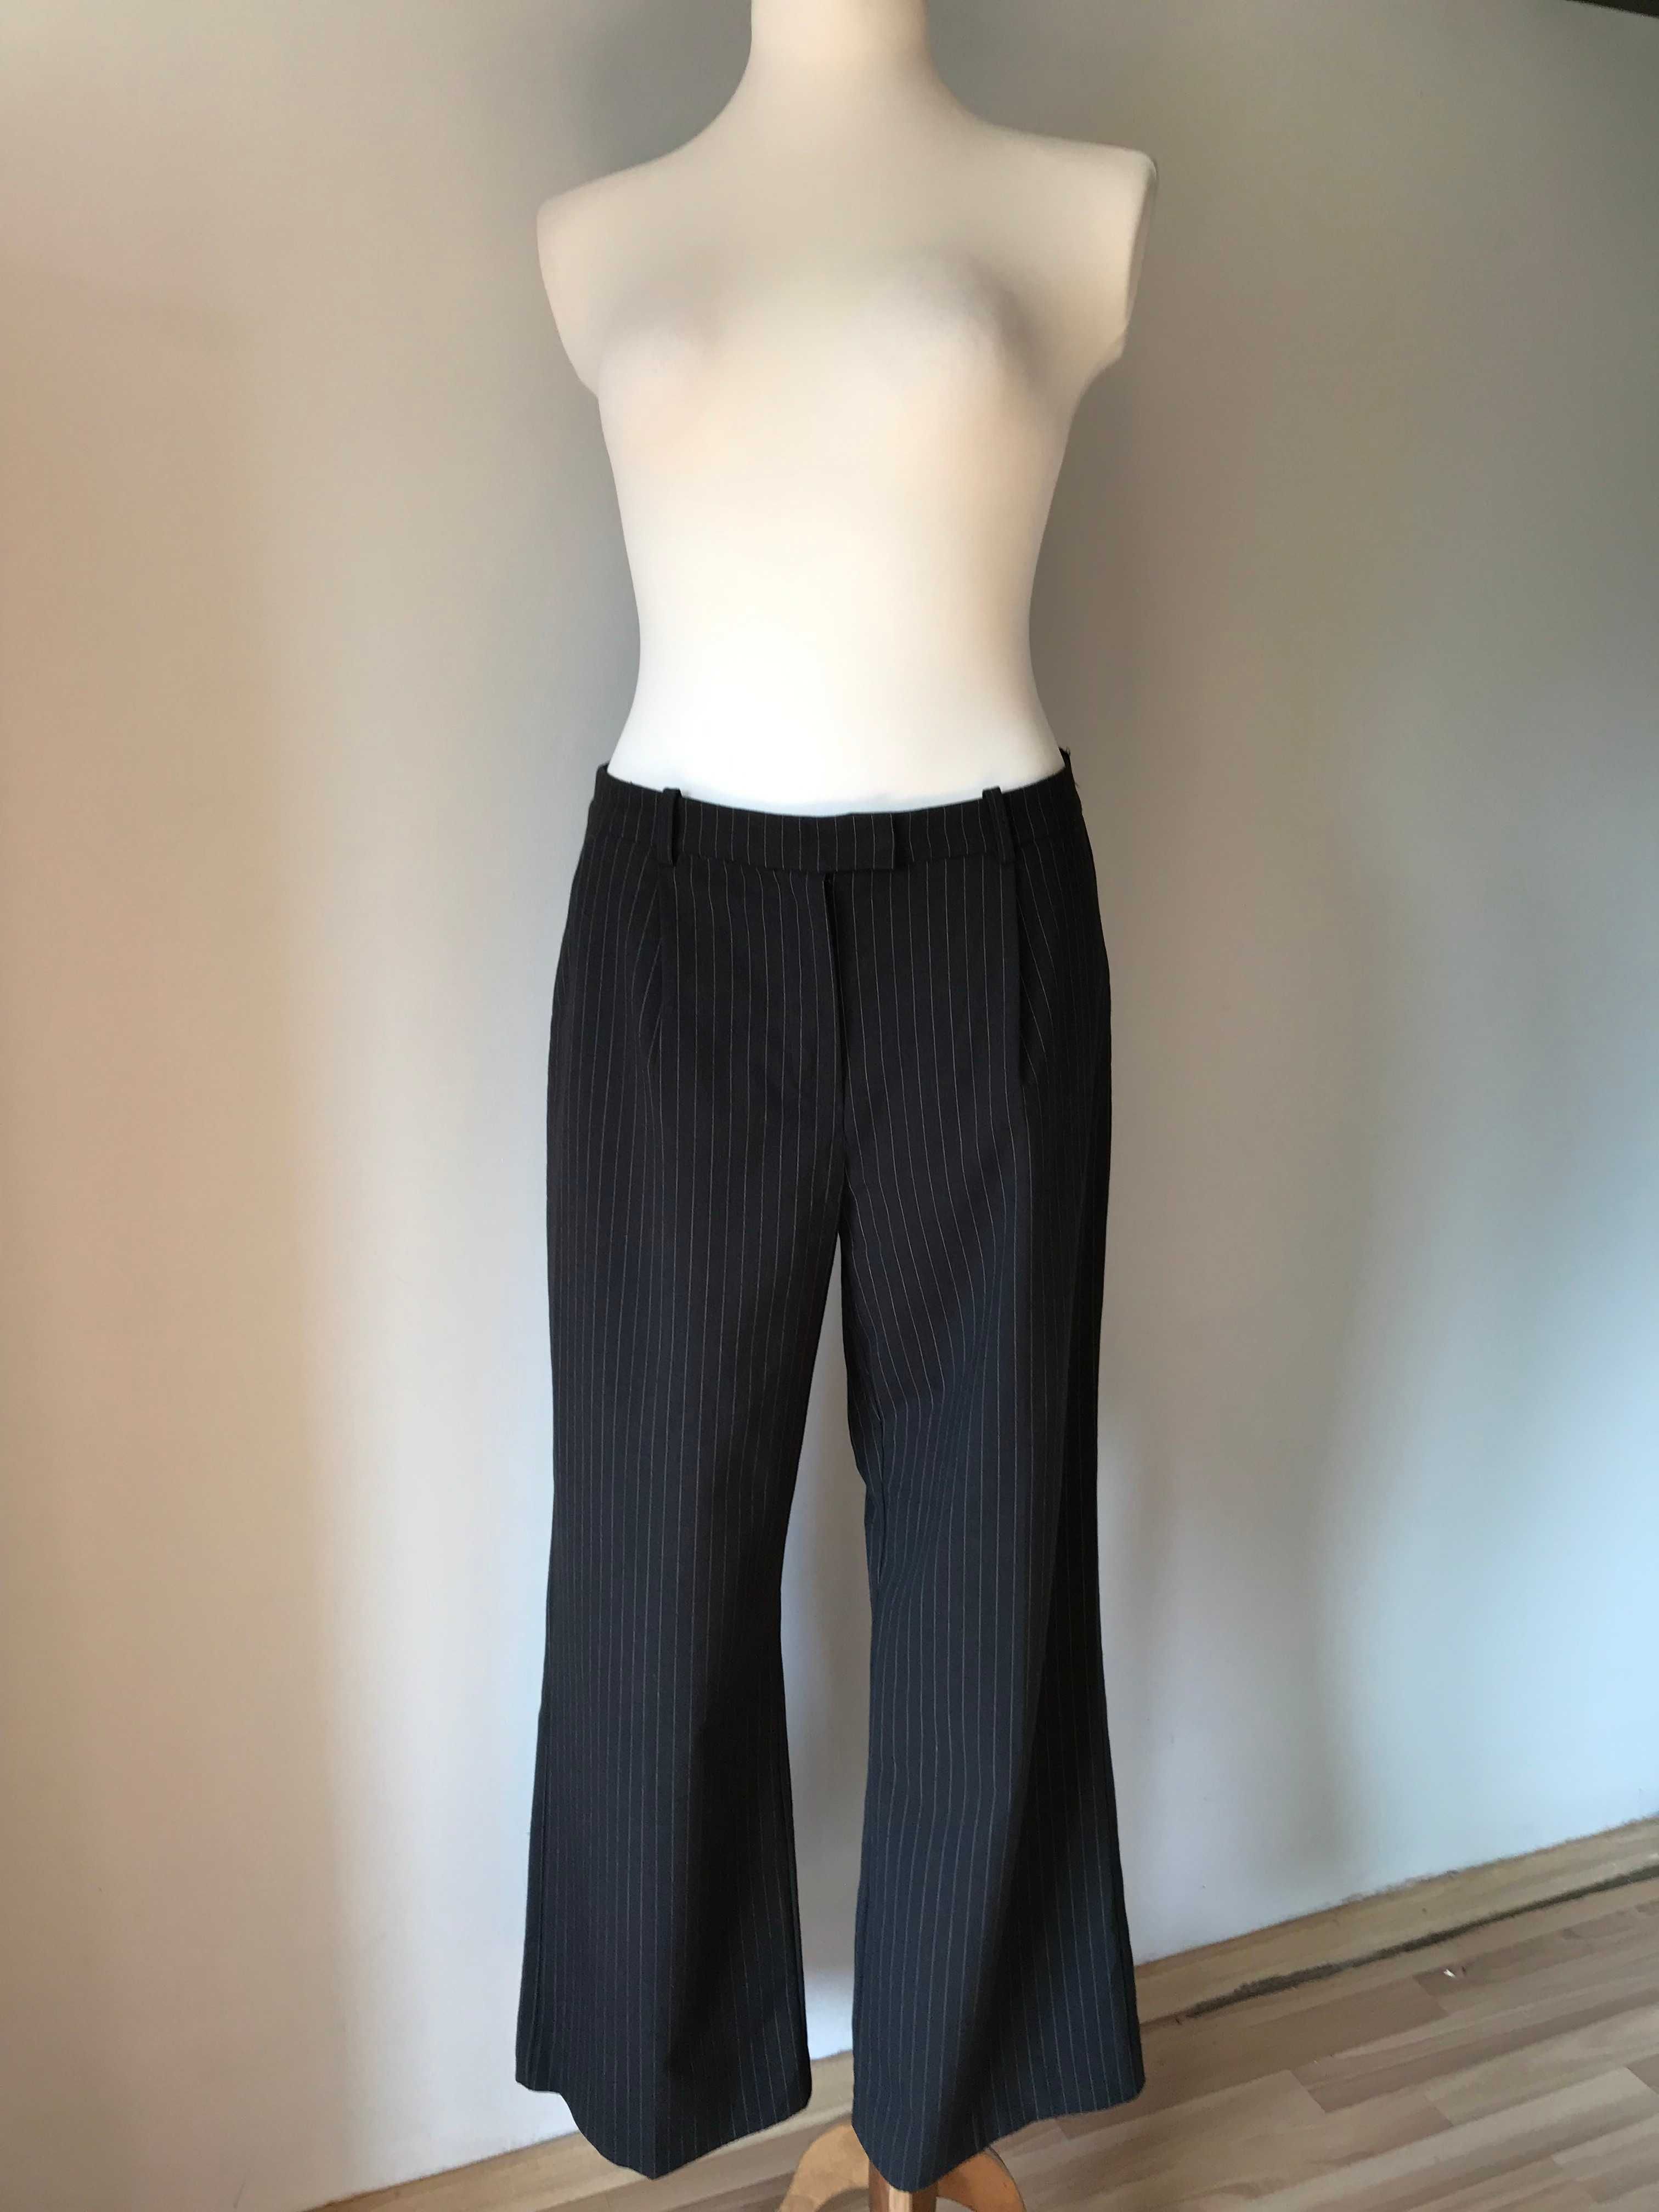 Szare eleganckie spodnie z prążkiem wizytowe r. 44 biznesowe vintage